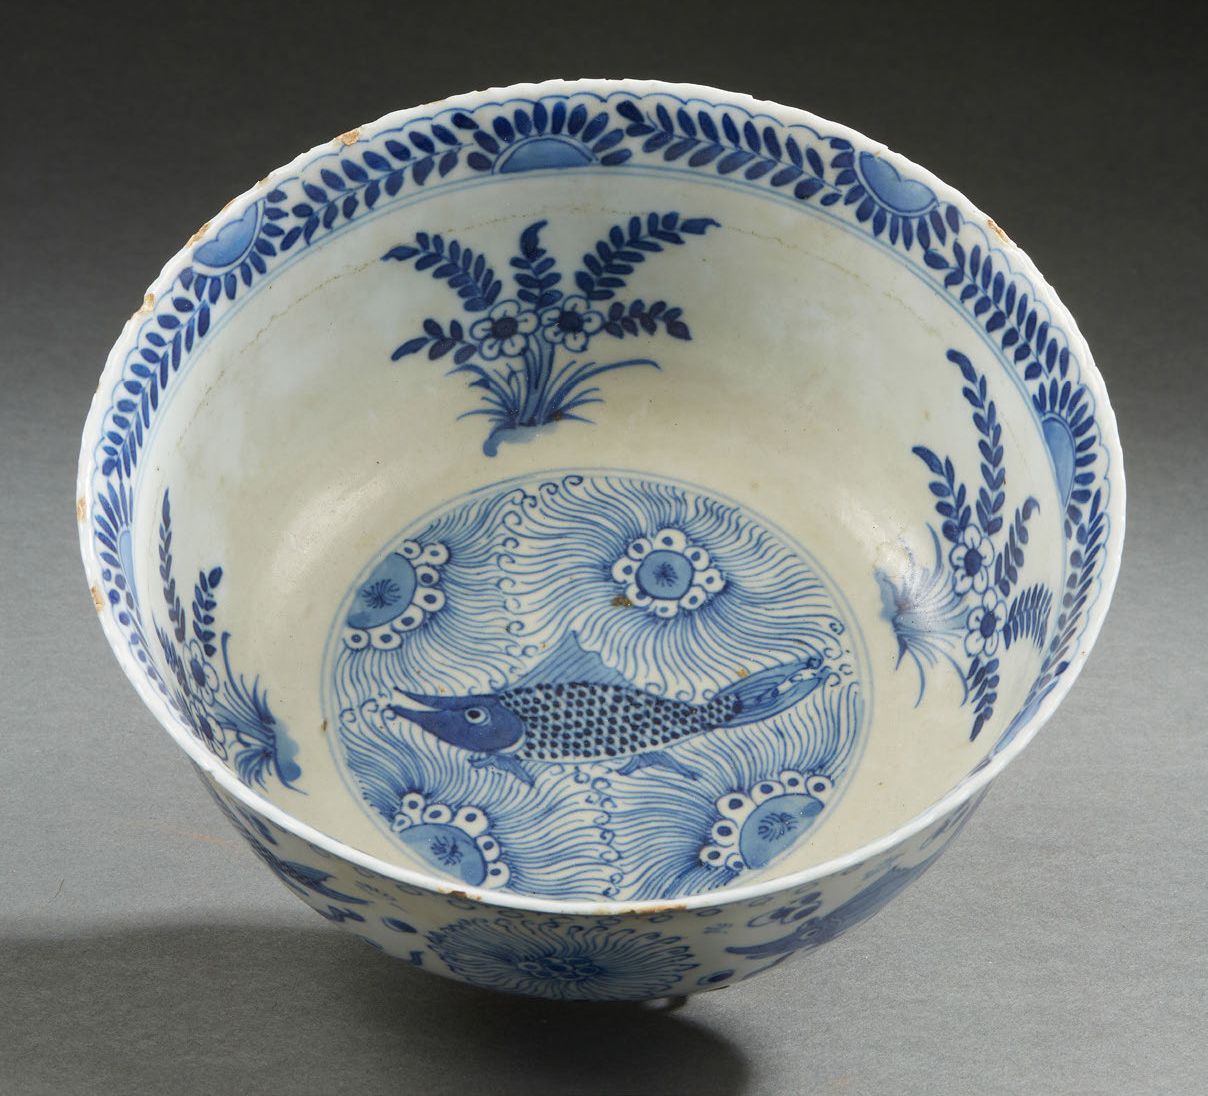 CHINE, XVIIIe siècle Cuenco de porcelana blanca y azul decorado con carpas entre&hellip;